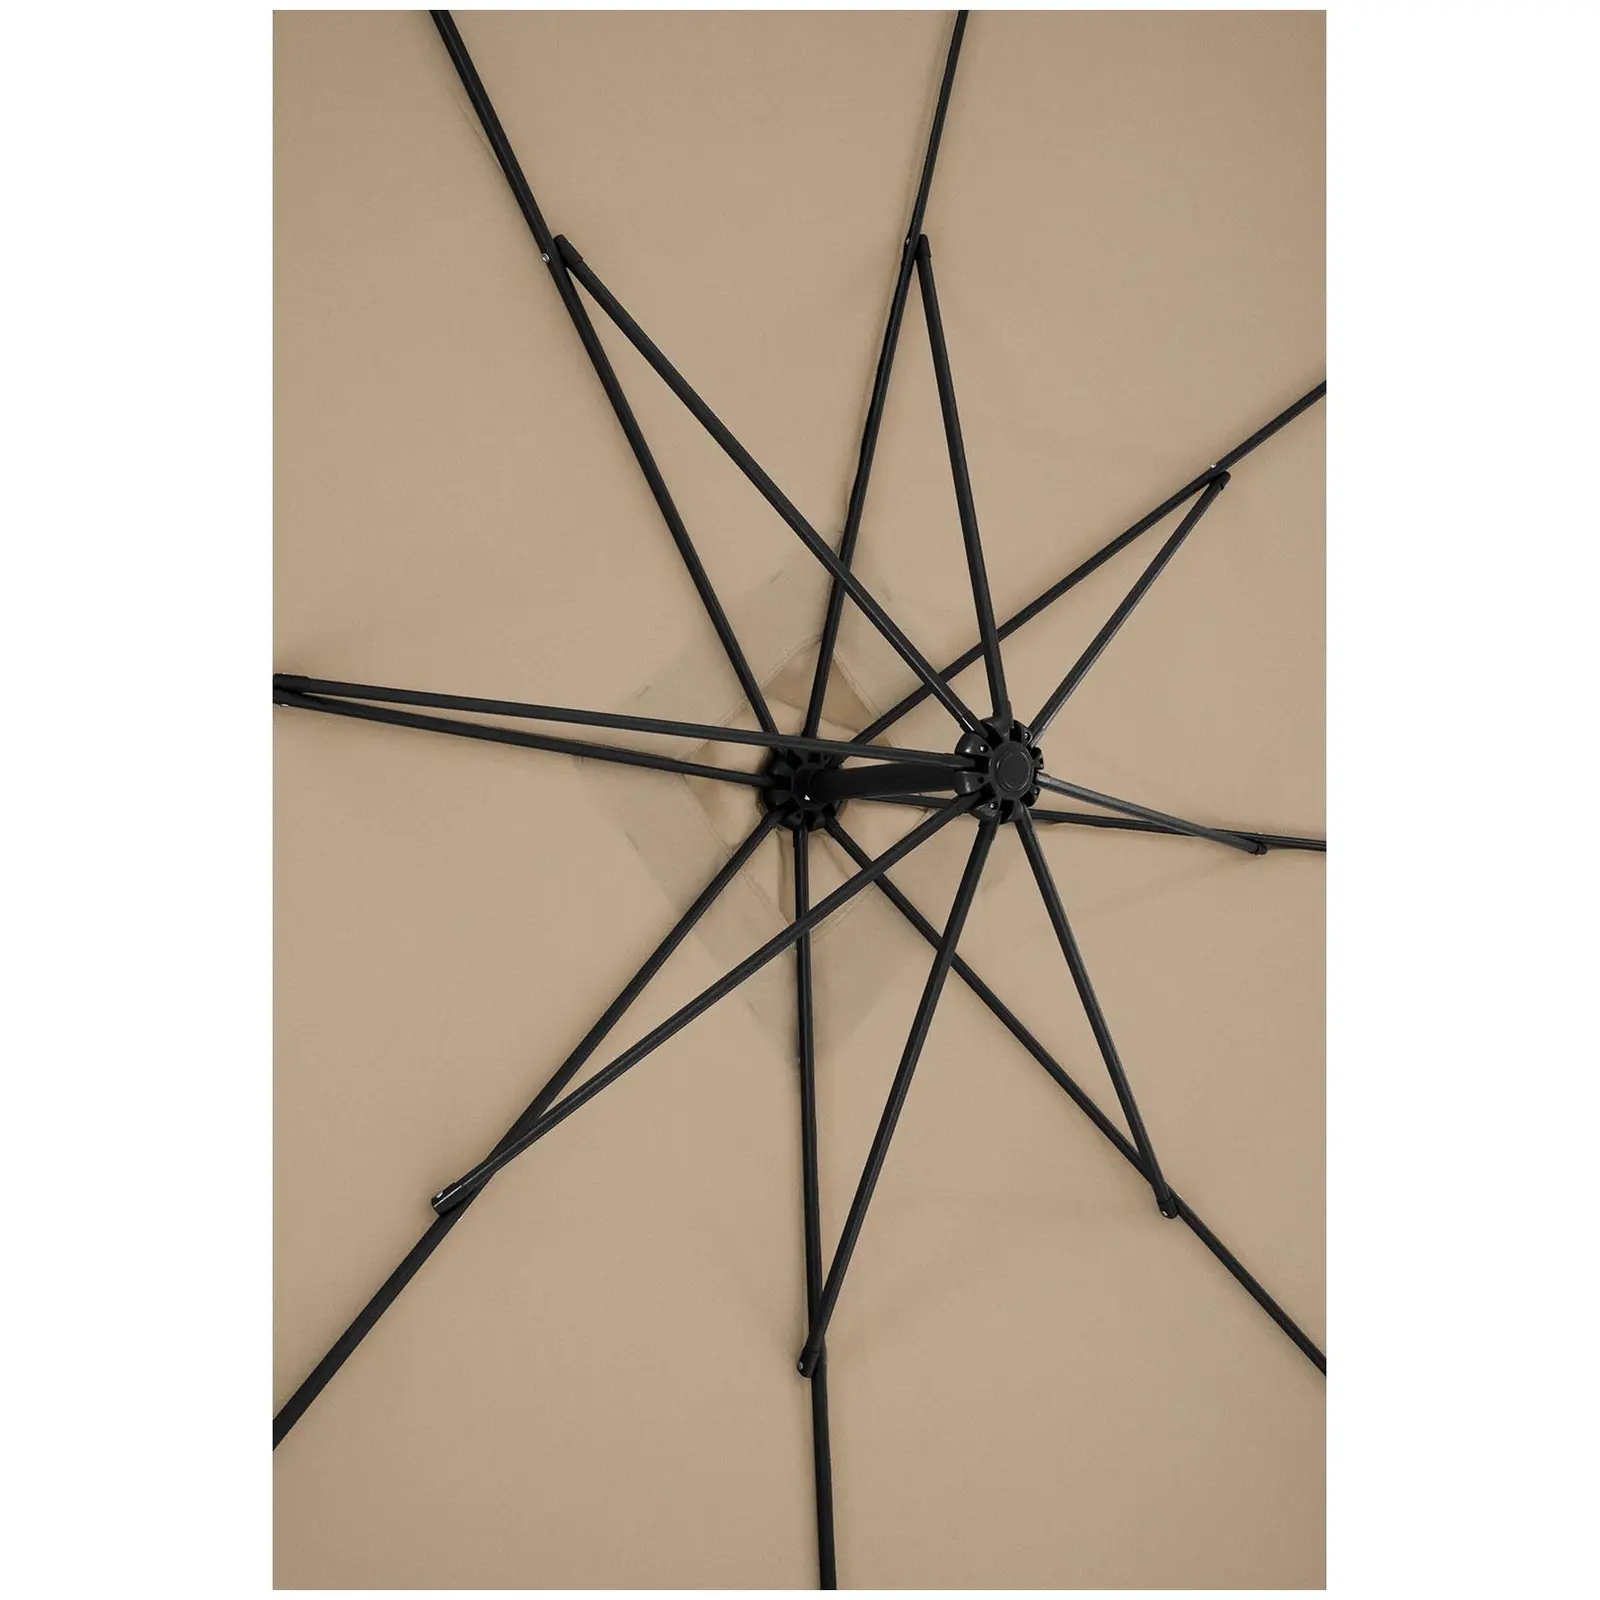 Parasol ogrodowy wiszący - szarobrązowy - kwadratowy - 250 x 250 cm - uchylny